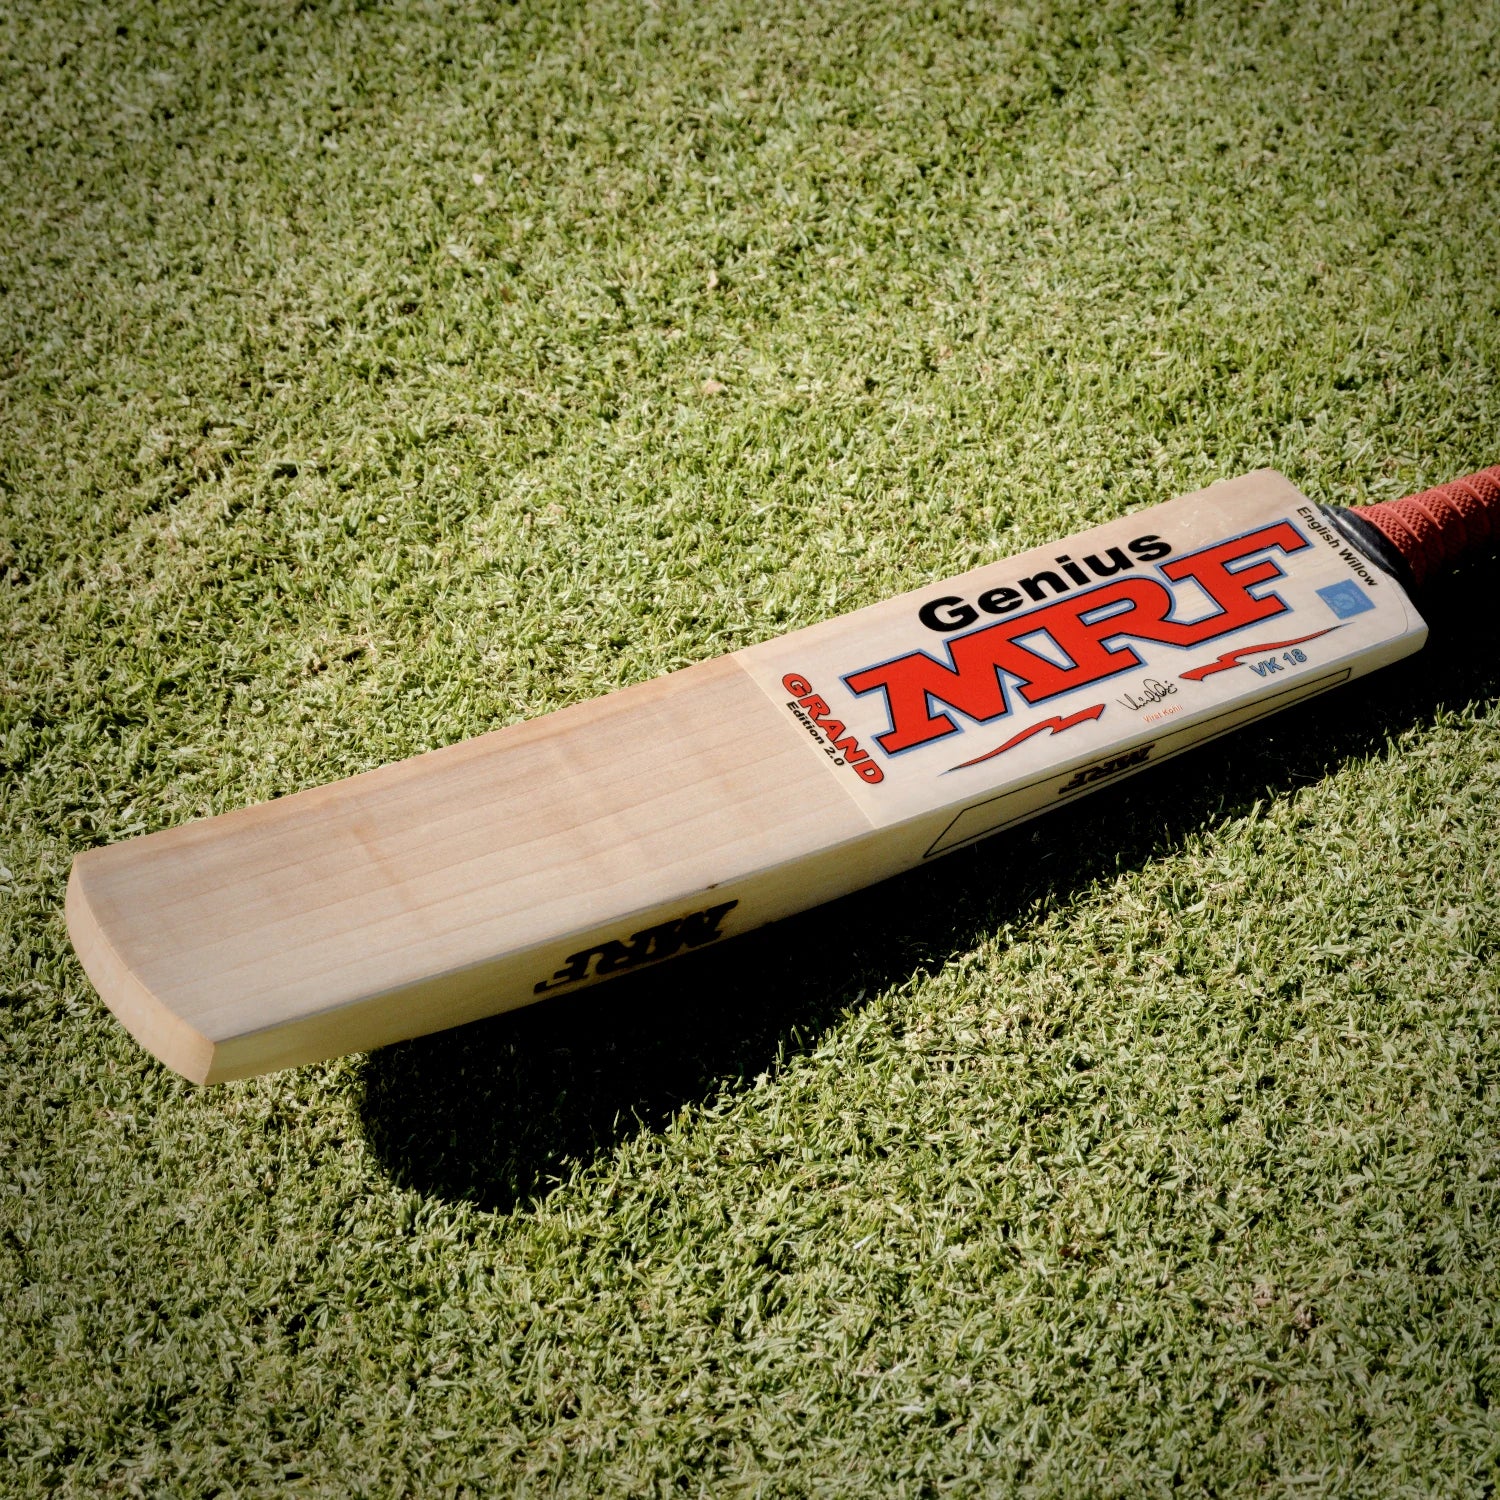 MRF Cricket Bats